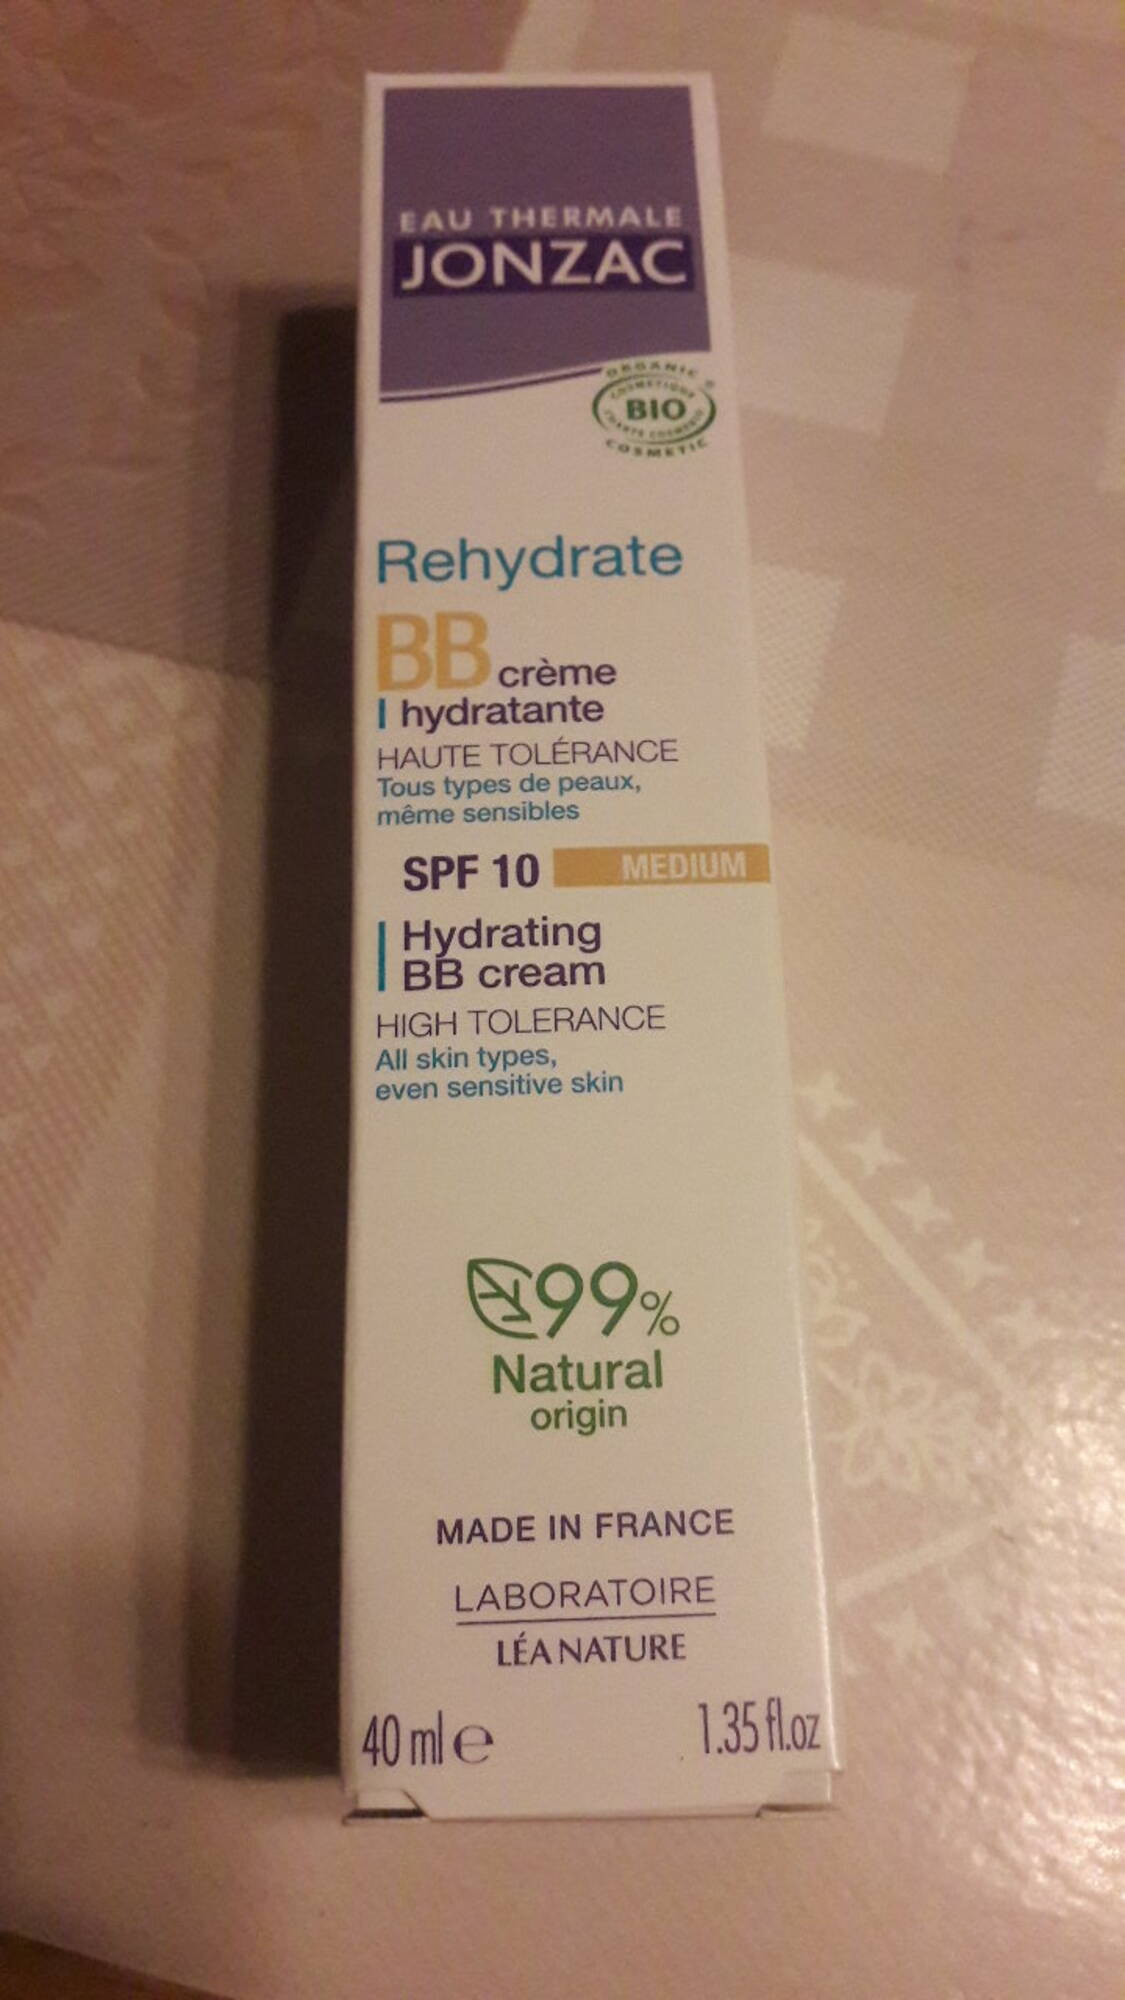 JONZAC - Rehydrate - BB crème hydratante SPF10 medium